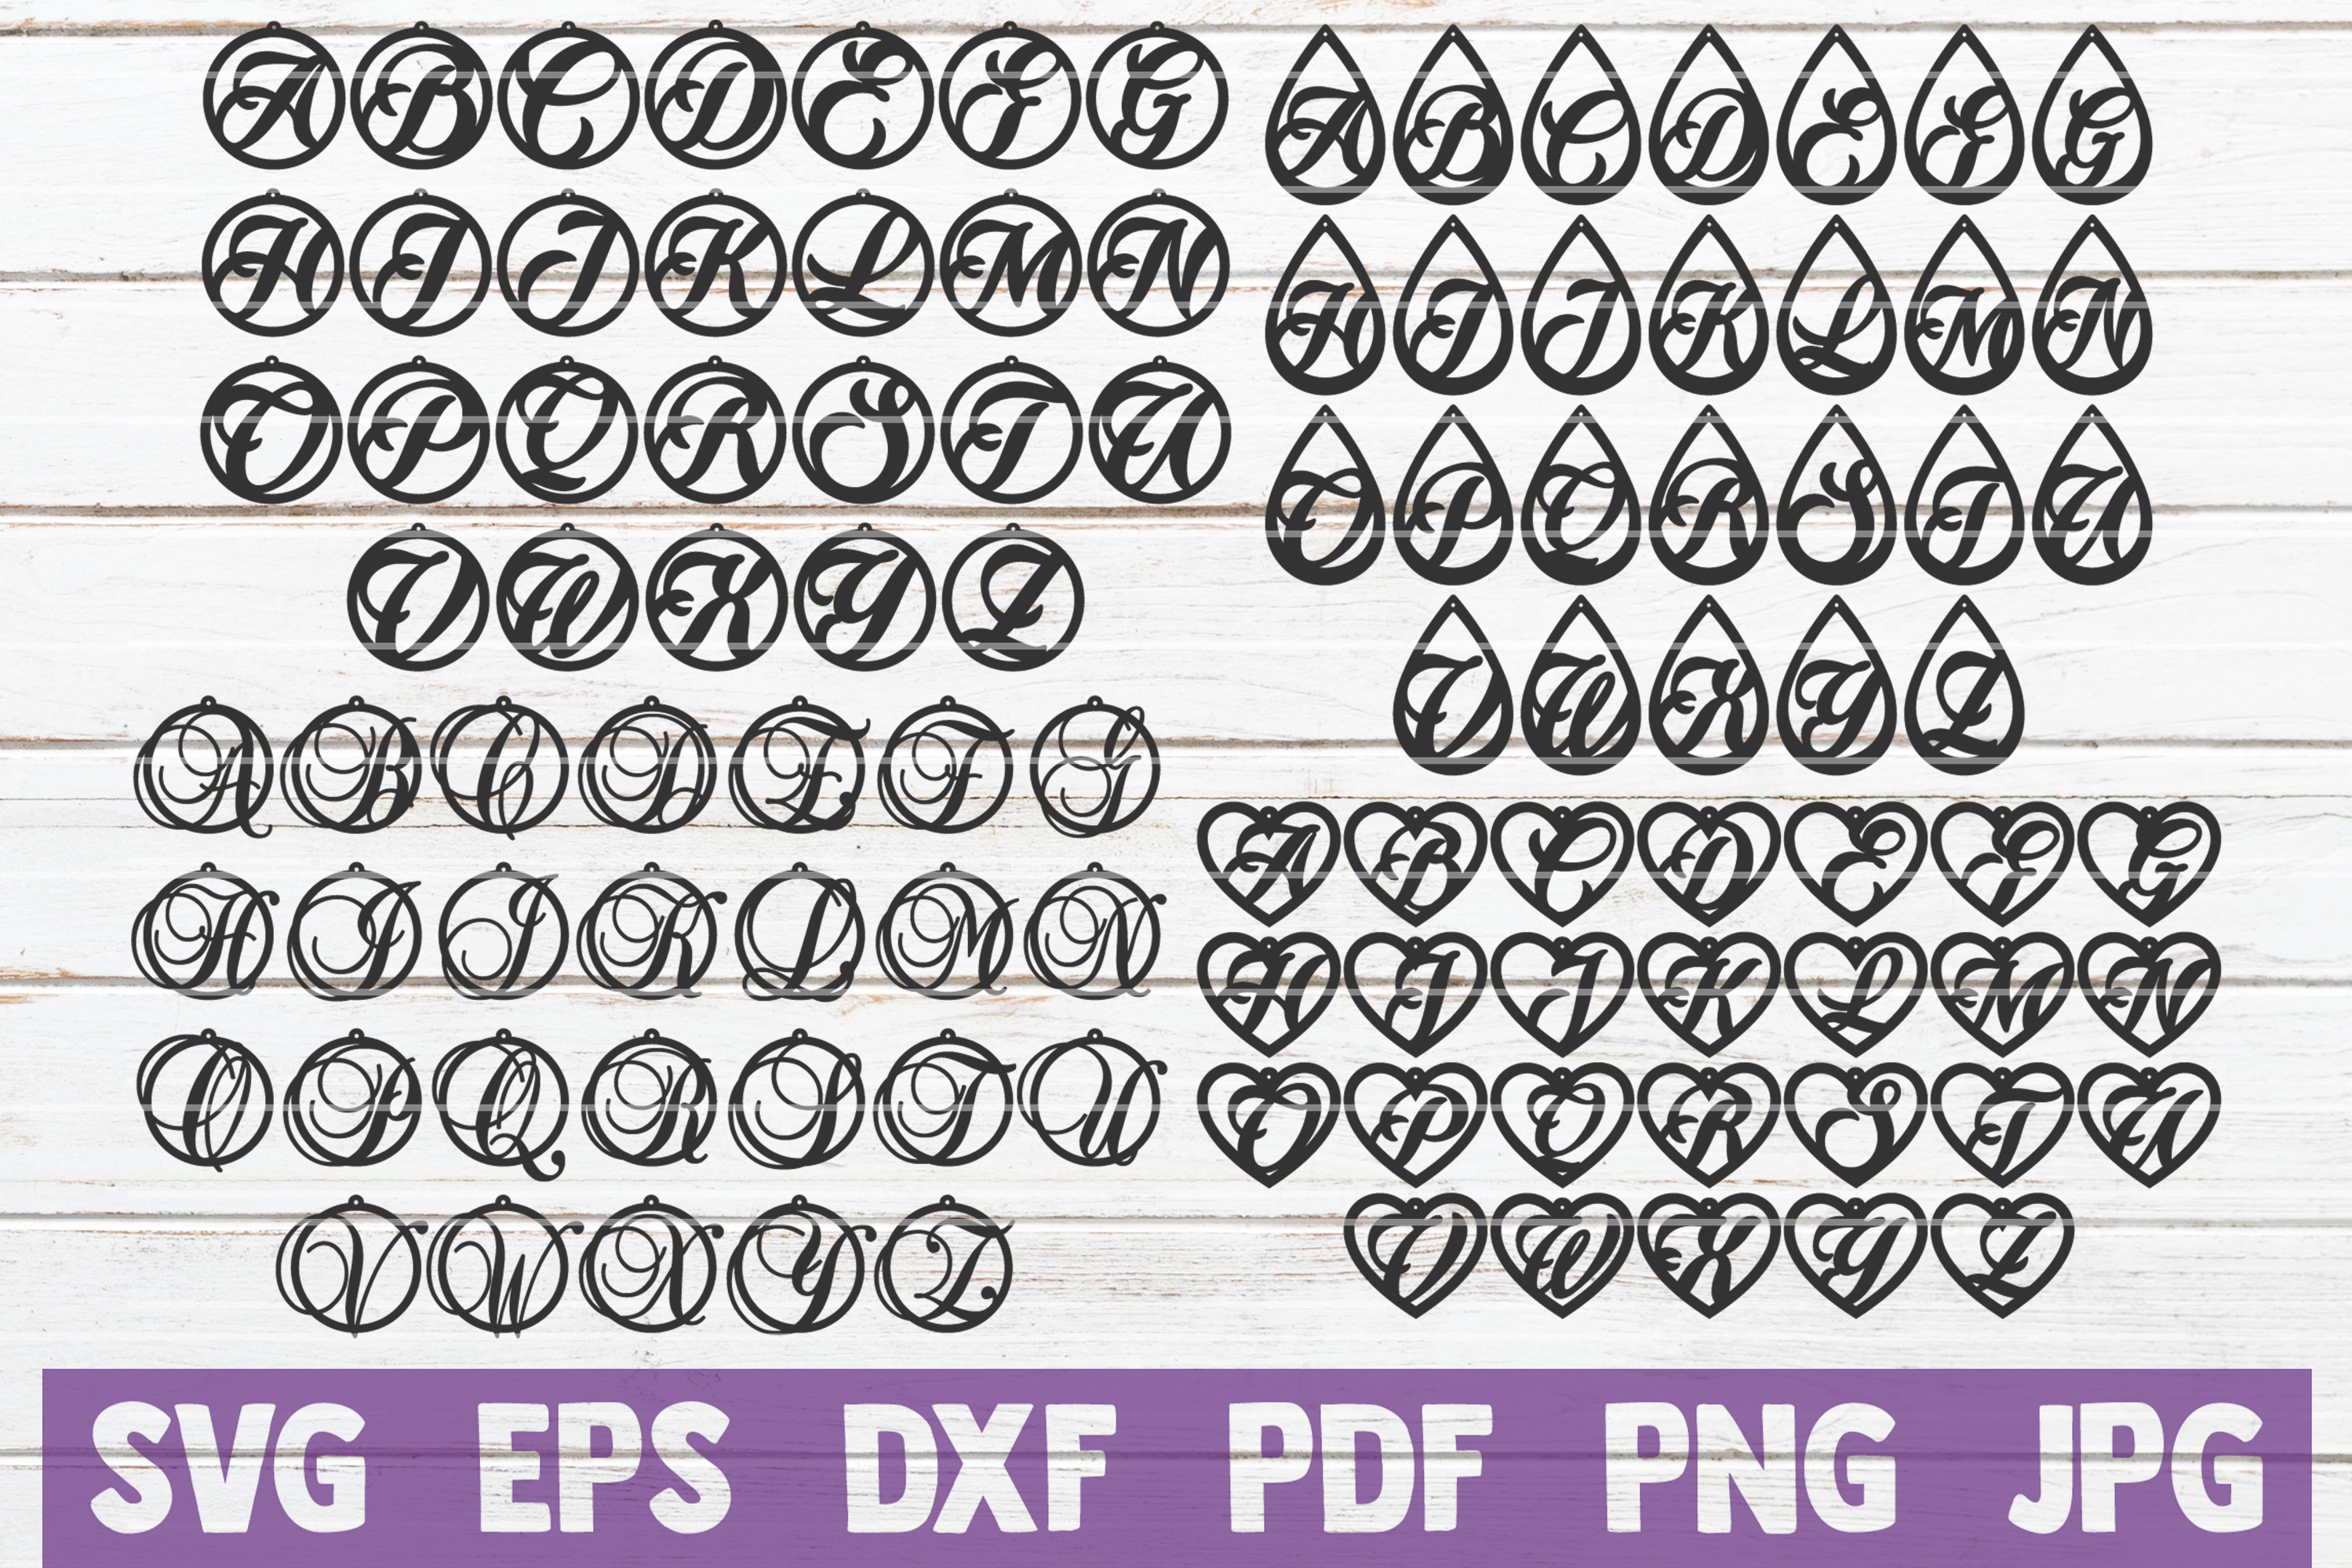 Download HUGE Earring SVG Bundle | SVG Cut Files | commercial use